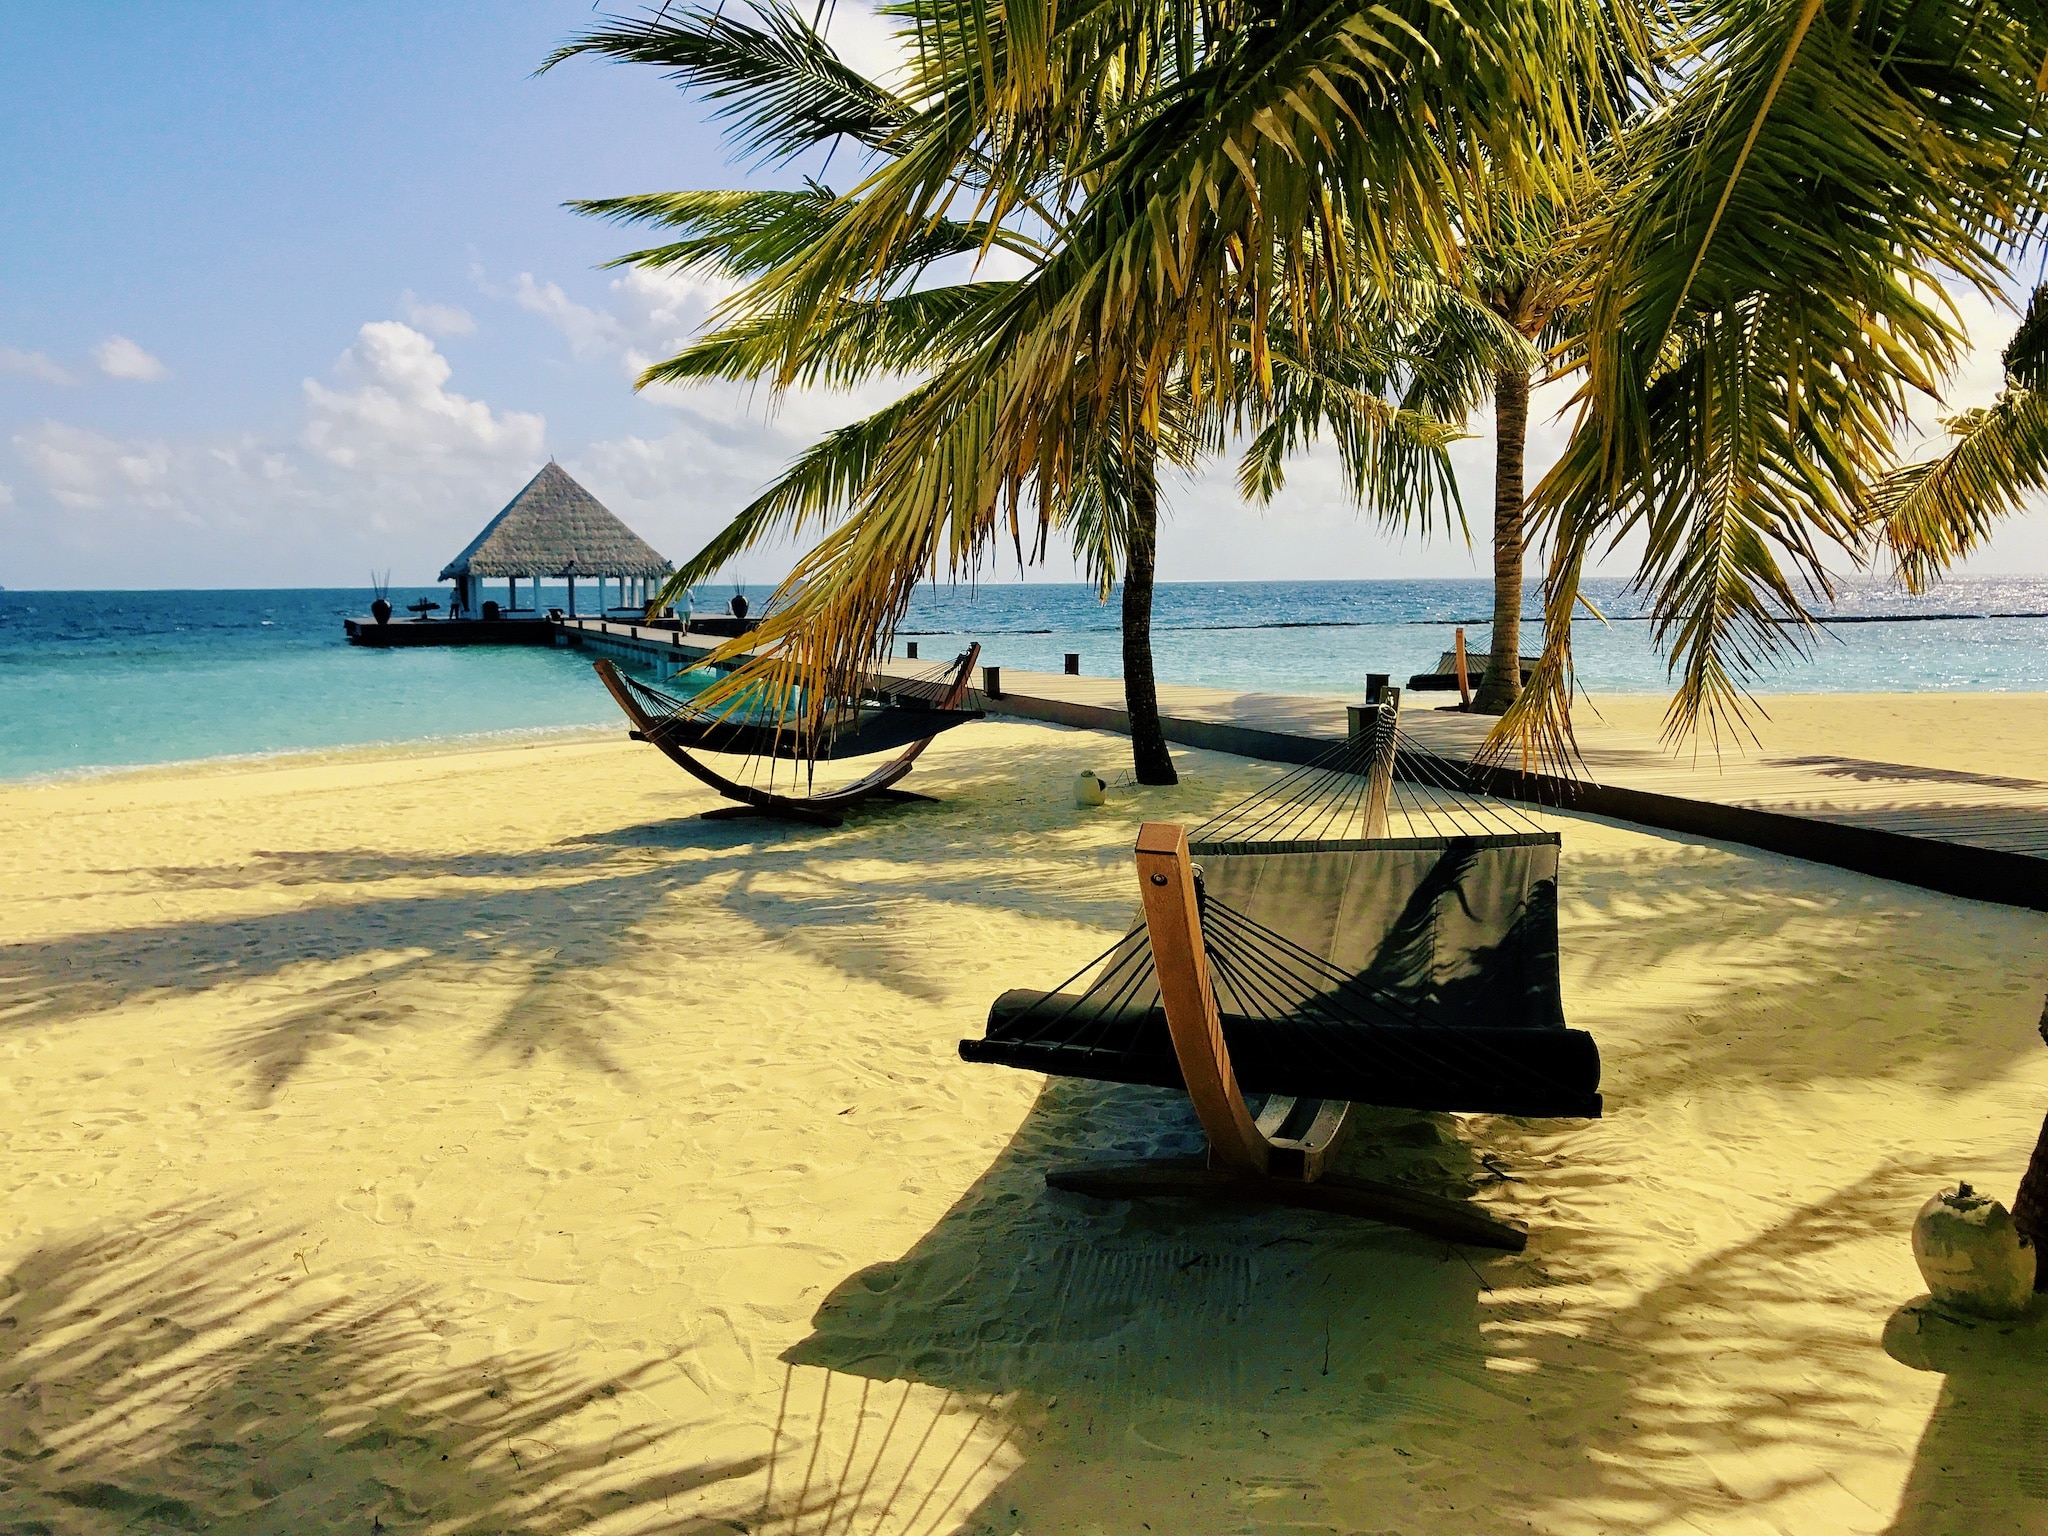 Goedkoop een vakantie naar de Malediven boeken – tips & ervaringen voor het paradijselijke eiland